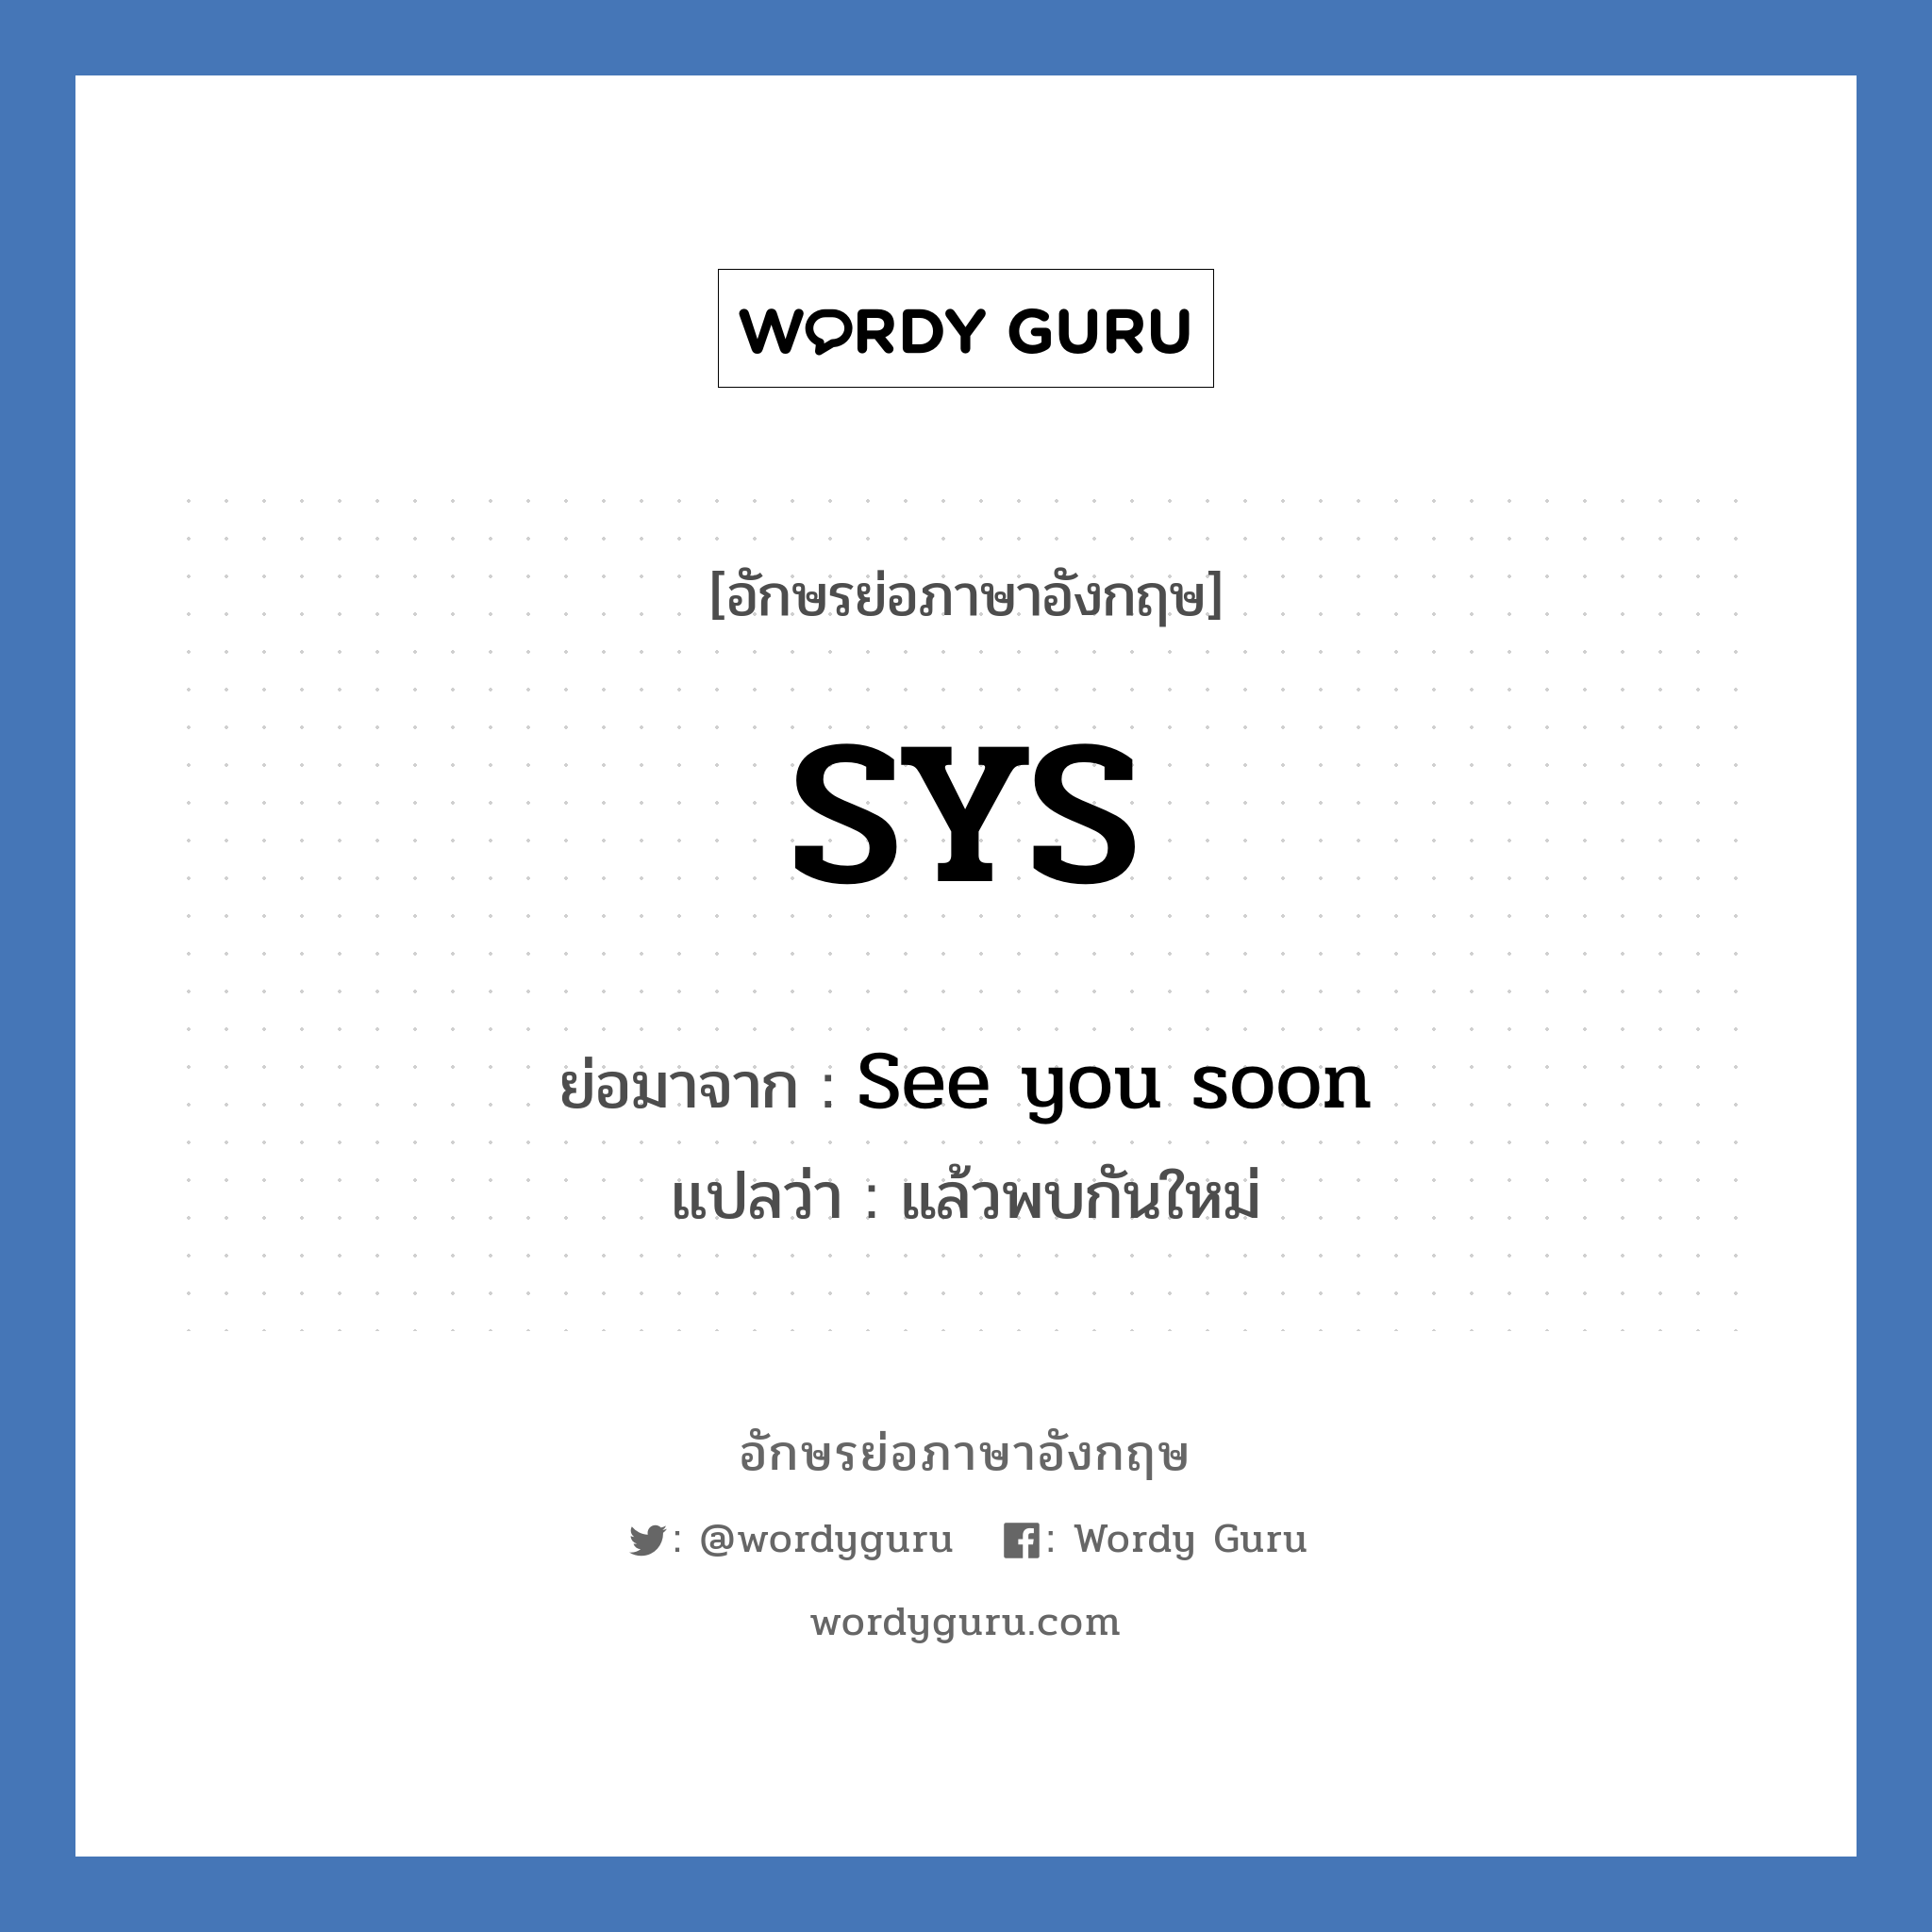 SYS ย่อมาจาก? แปลว่า?, อักษรย่อภาษาอังกฤษ SYS ย่อมาจาก See you soon แปลว่า แล้วพบกันใหม่